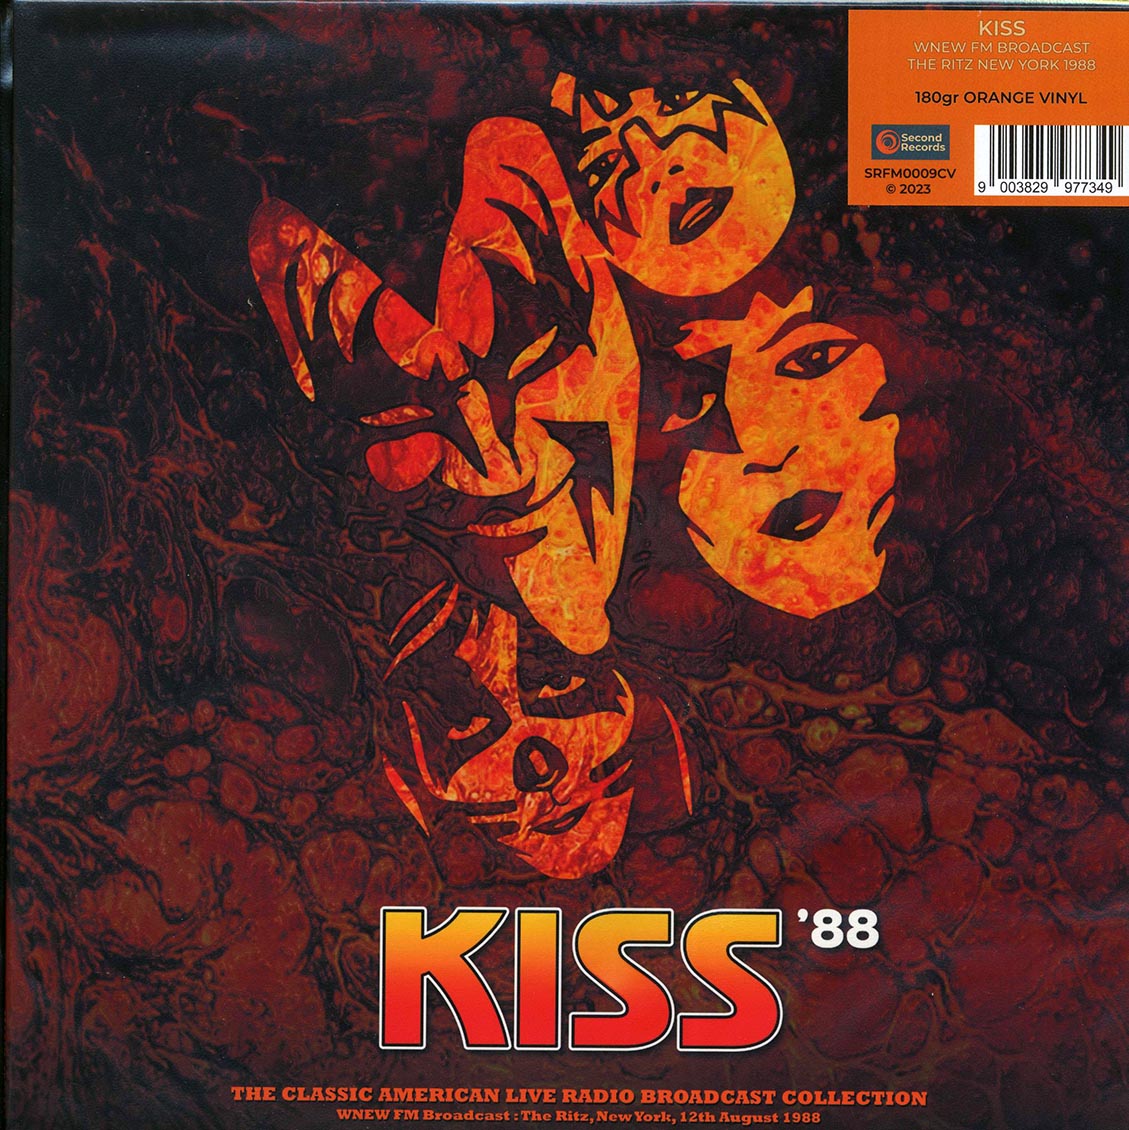 Kiss - Kiss '88: WNEW FM Broadcast, The Ritz New York 1988 - Vinyl LP